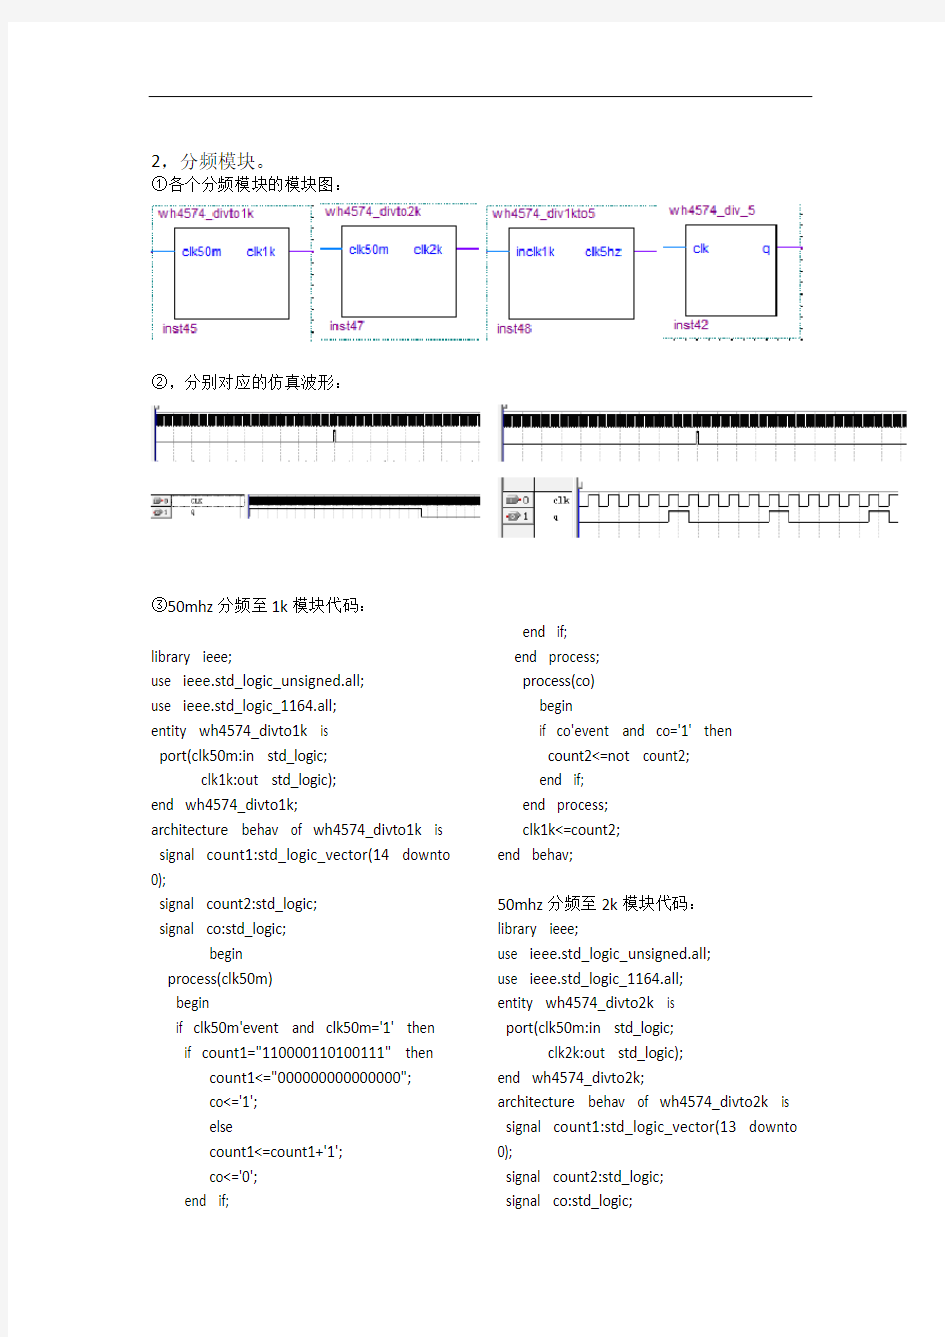 重庆大学EDA课程设计-vhdl语言-12.24小时时钟-乐曲播放电路-函数信号发生器